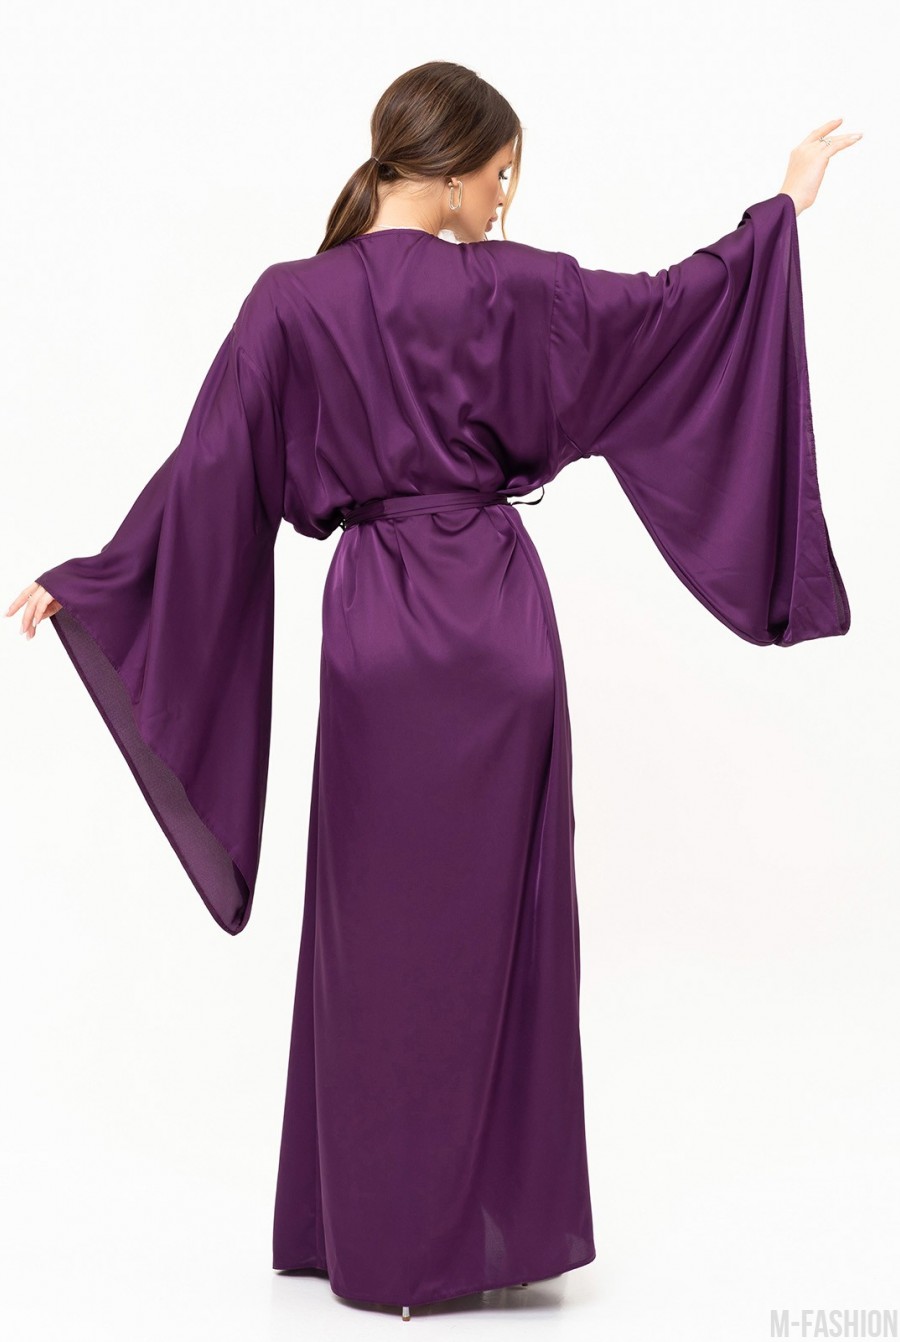 Фиолетовое шелковое длинное платье-халат на запах - Фото 3